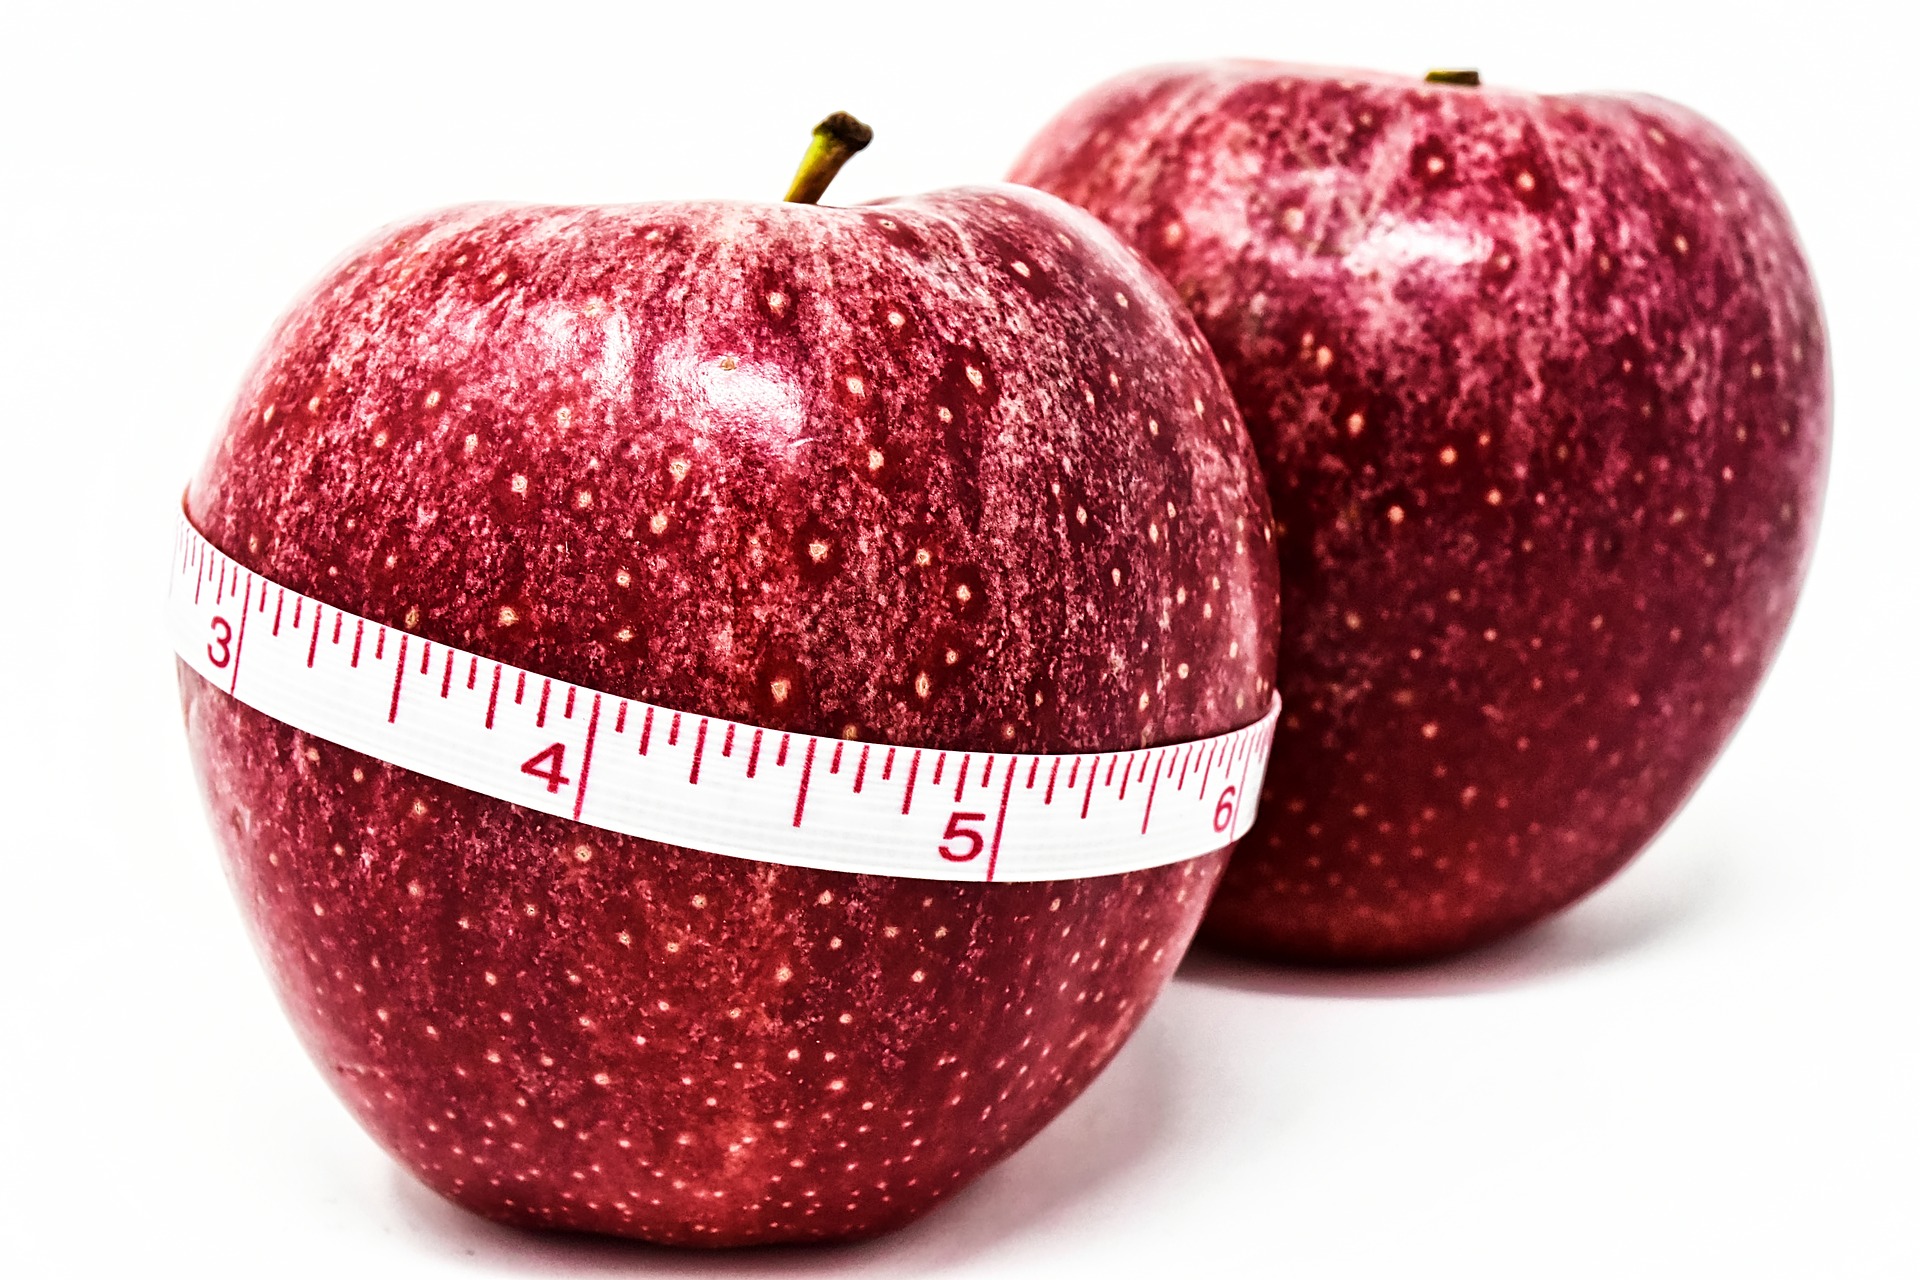 Mitos e verdades sobre as cirurgias de obesidade | Instituto Sallet